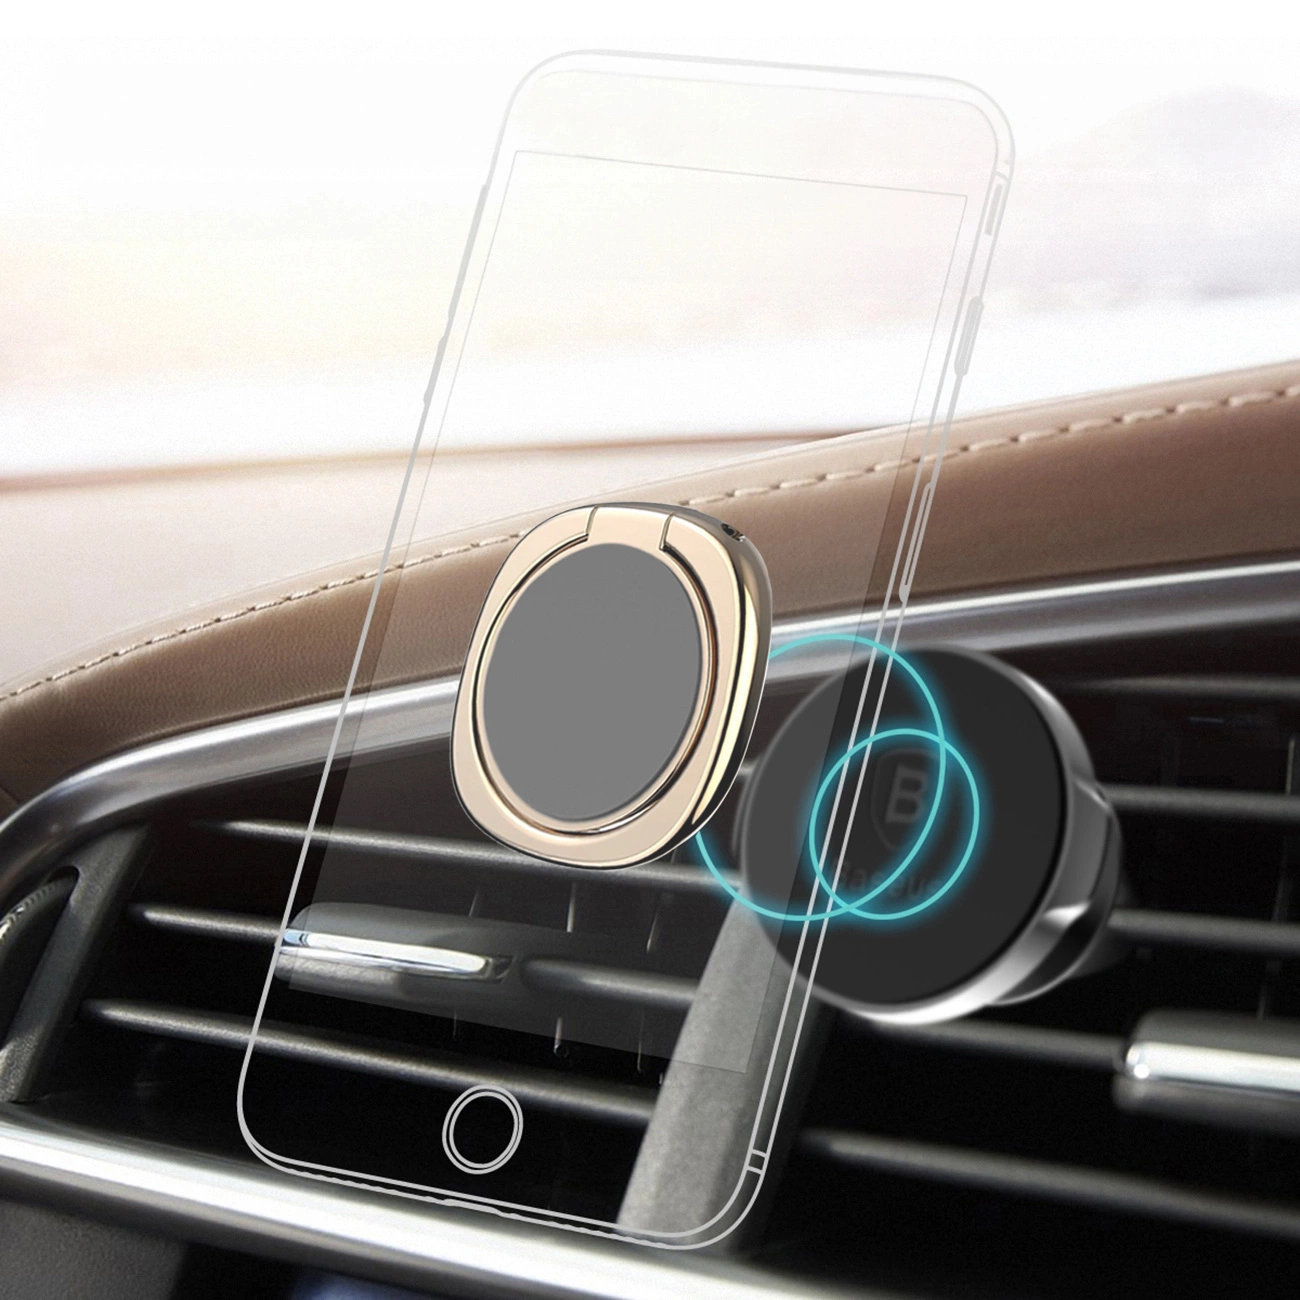 Wizualizacja mocowania złotego uchwytu Baseus Privity Ring do uchwytu telefonu w kratce wentylacyjnej samochodu